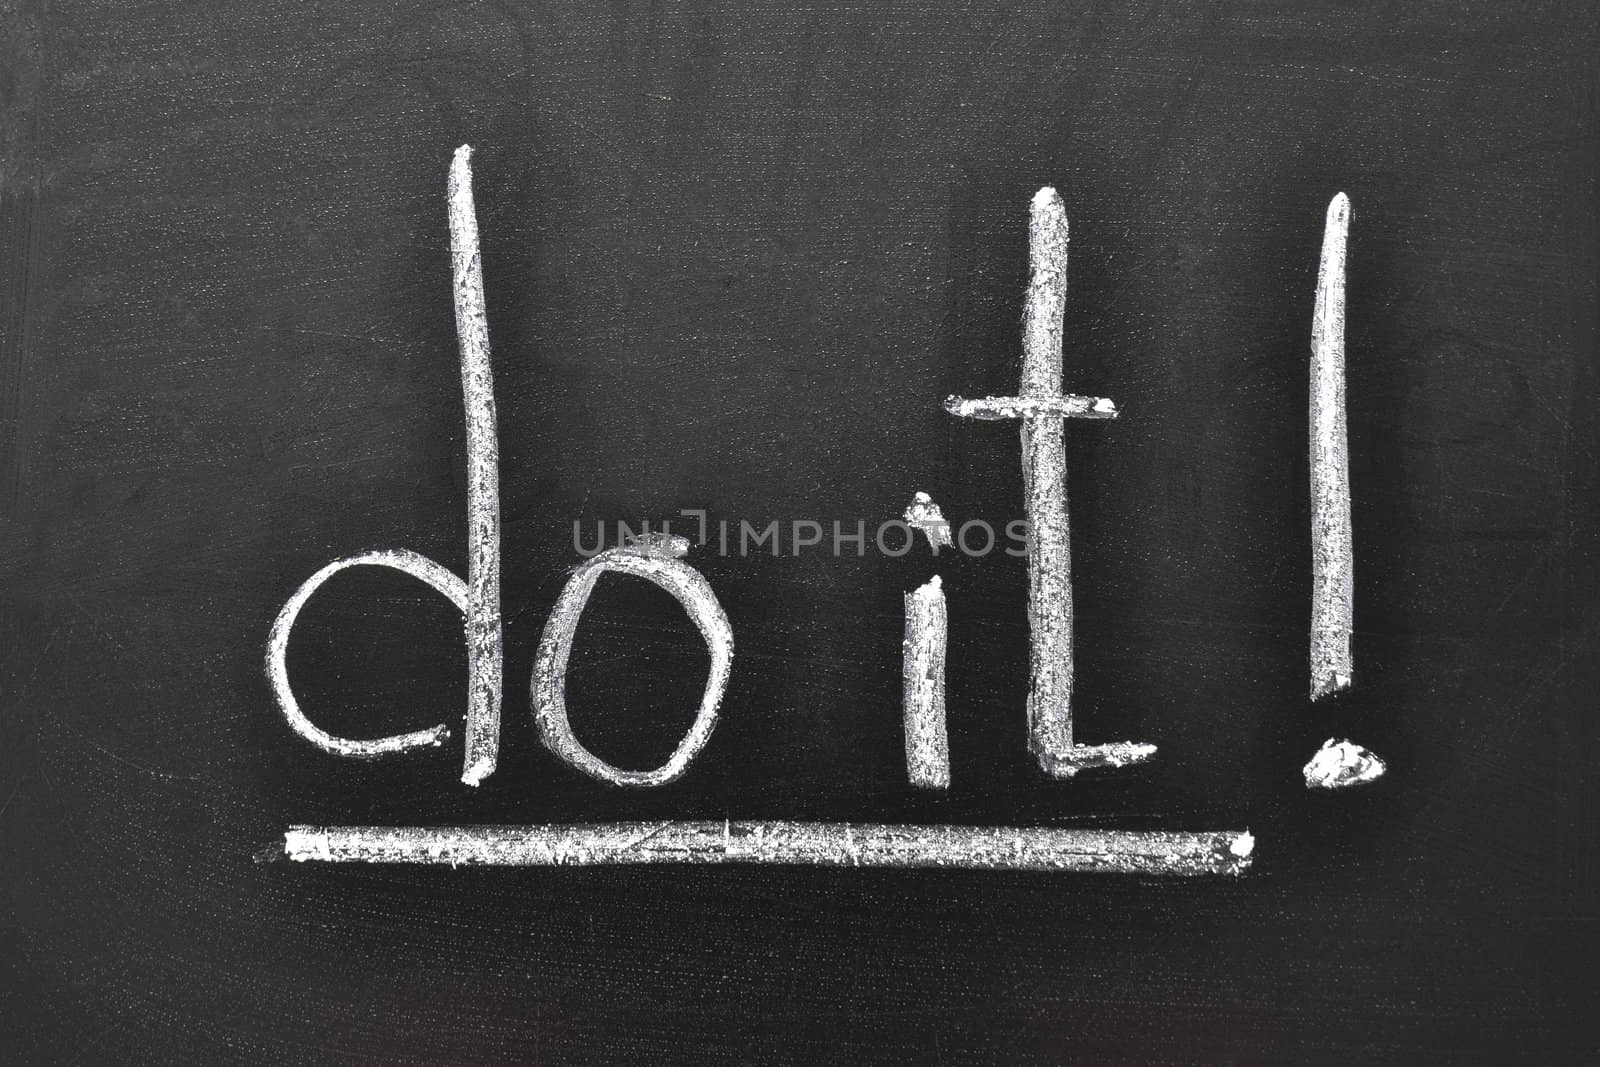 handwritten motivation words - Do it! on the school blackboard